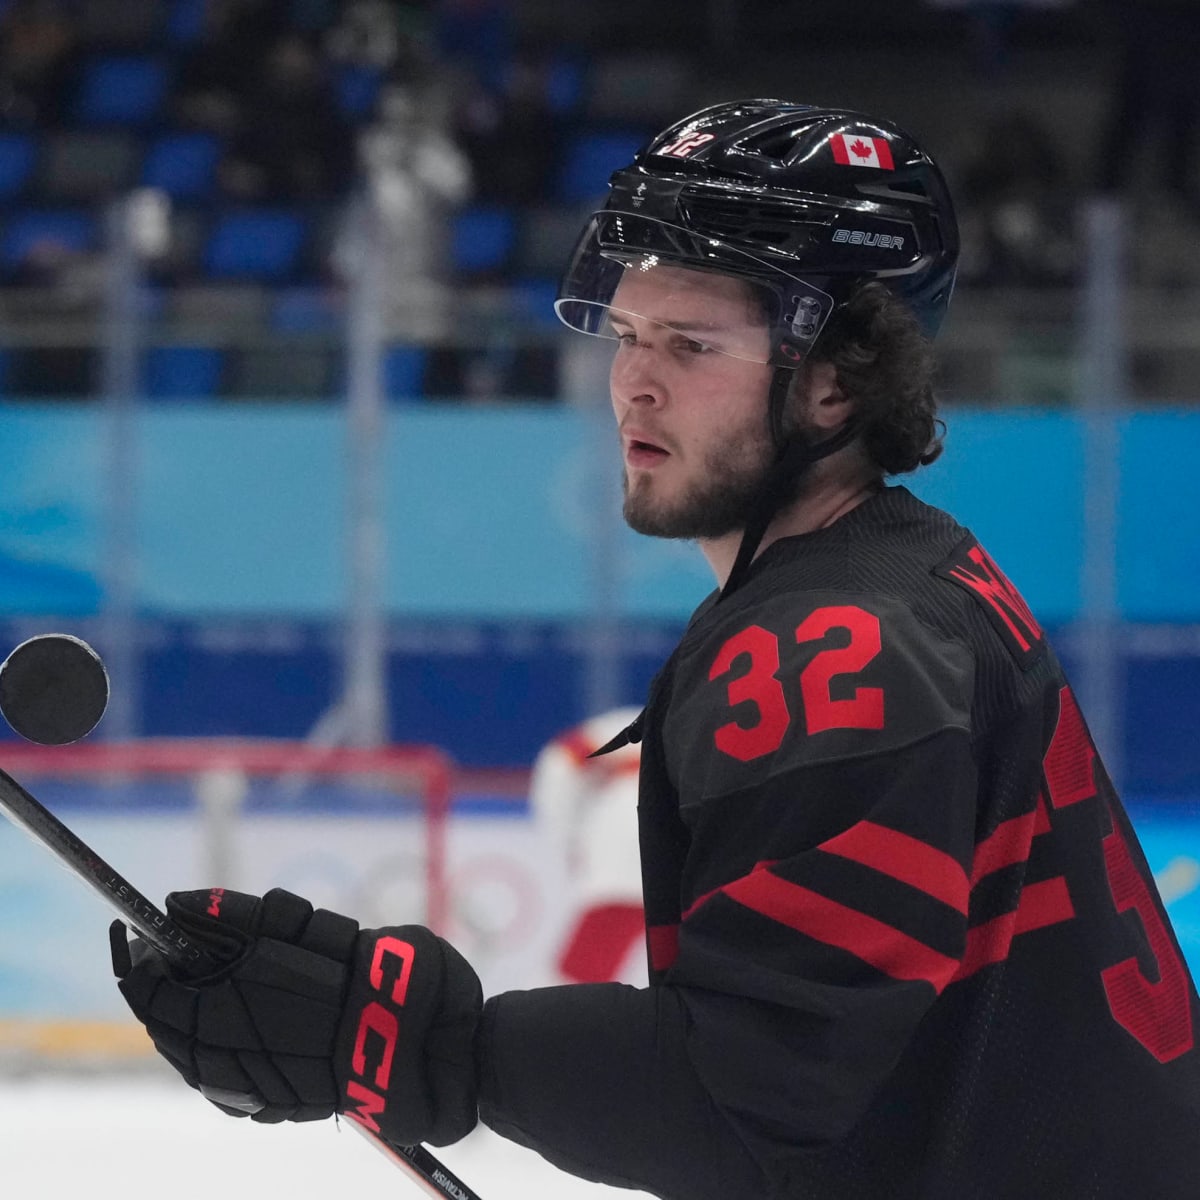 Slafkovsky, 17, among standout stars in hockey at Olympics